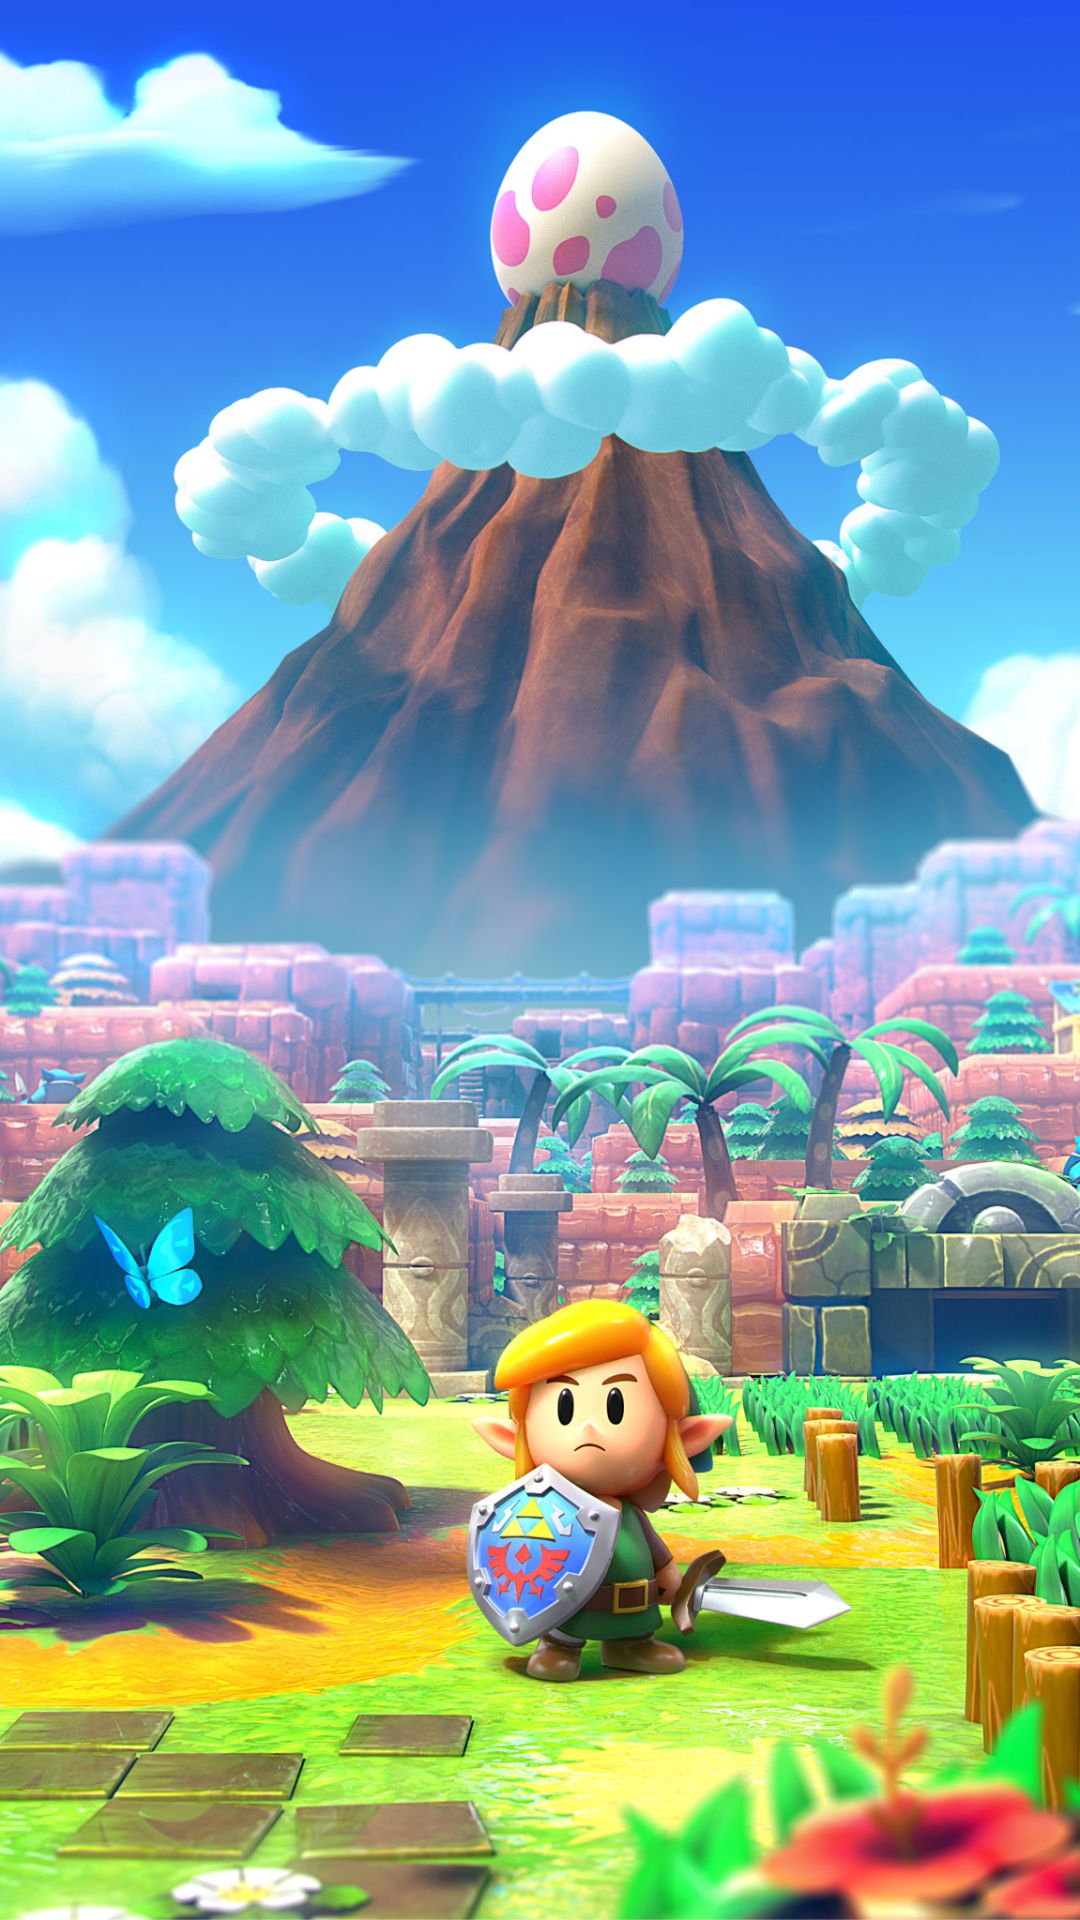 Legend of Zelda iPhone Wallpaper 74 images